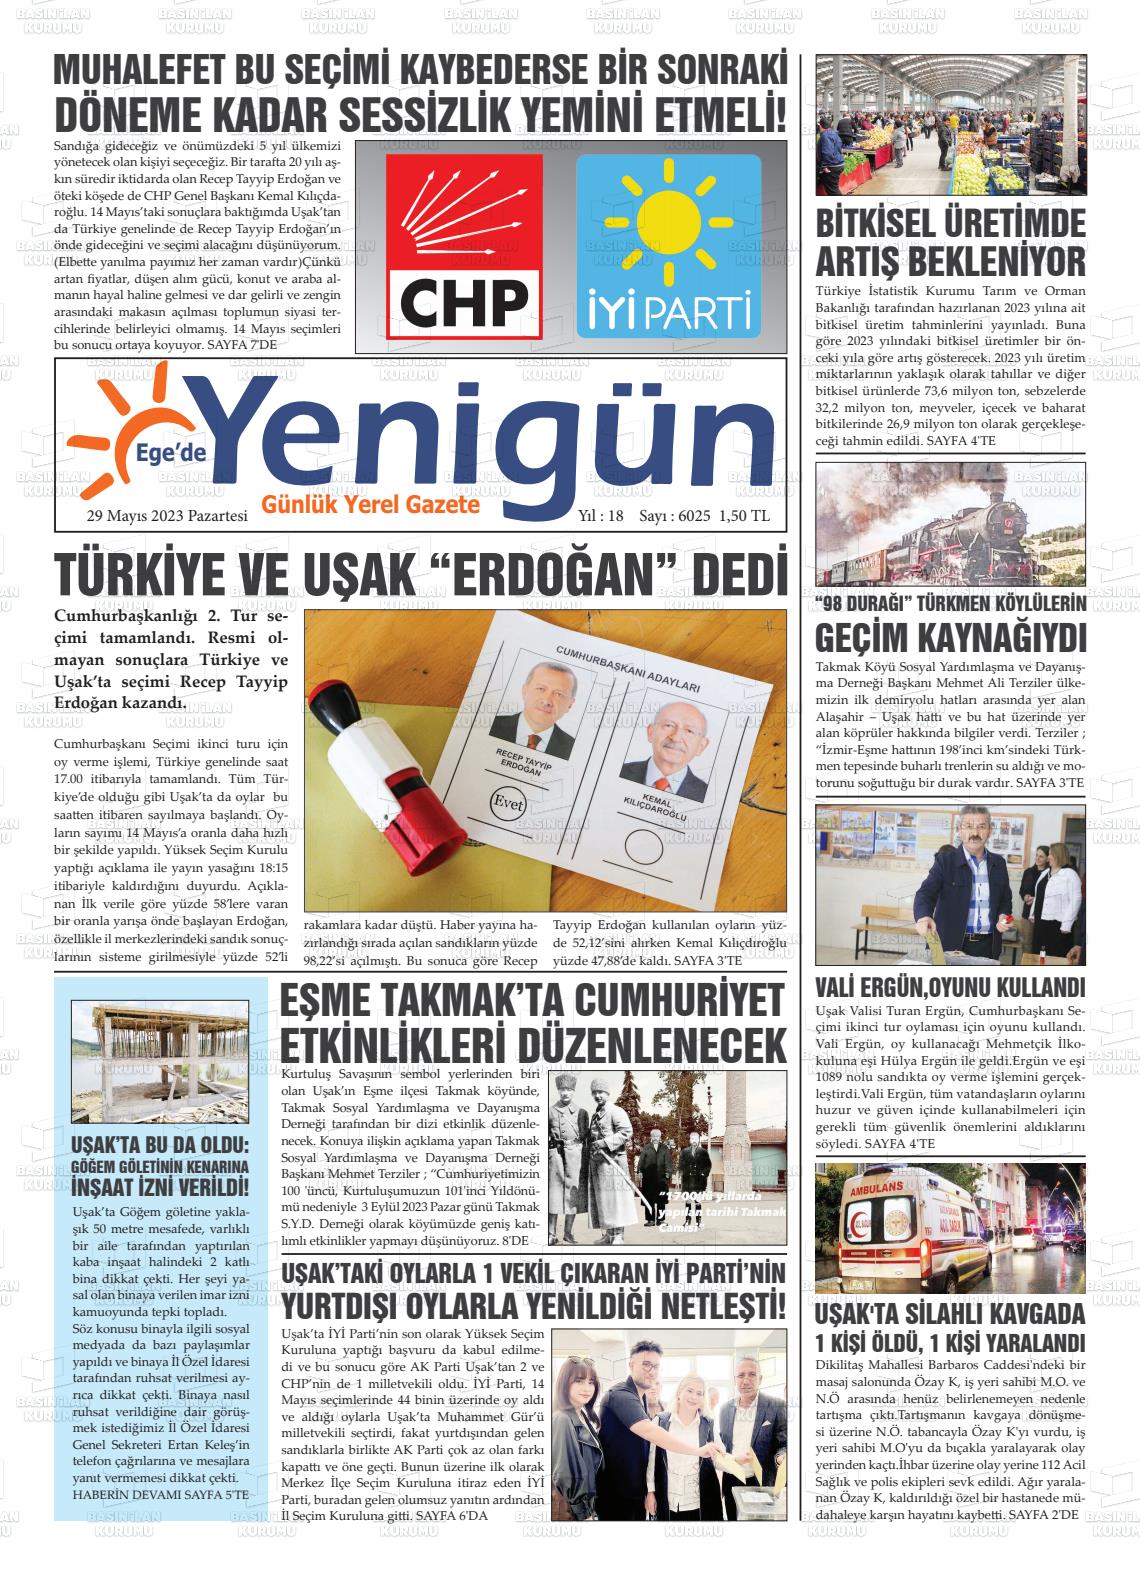 29 Mayıs 2023 EGE'DE YENİGÜN GAZETESİ Gazete Manşeti